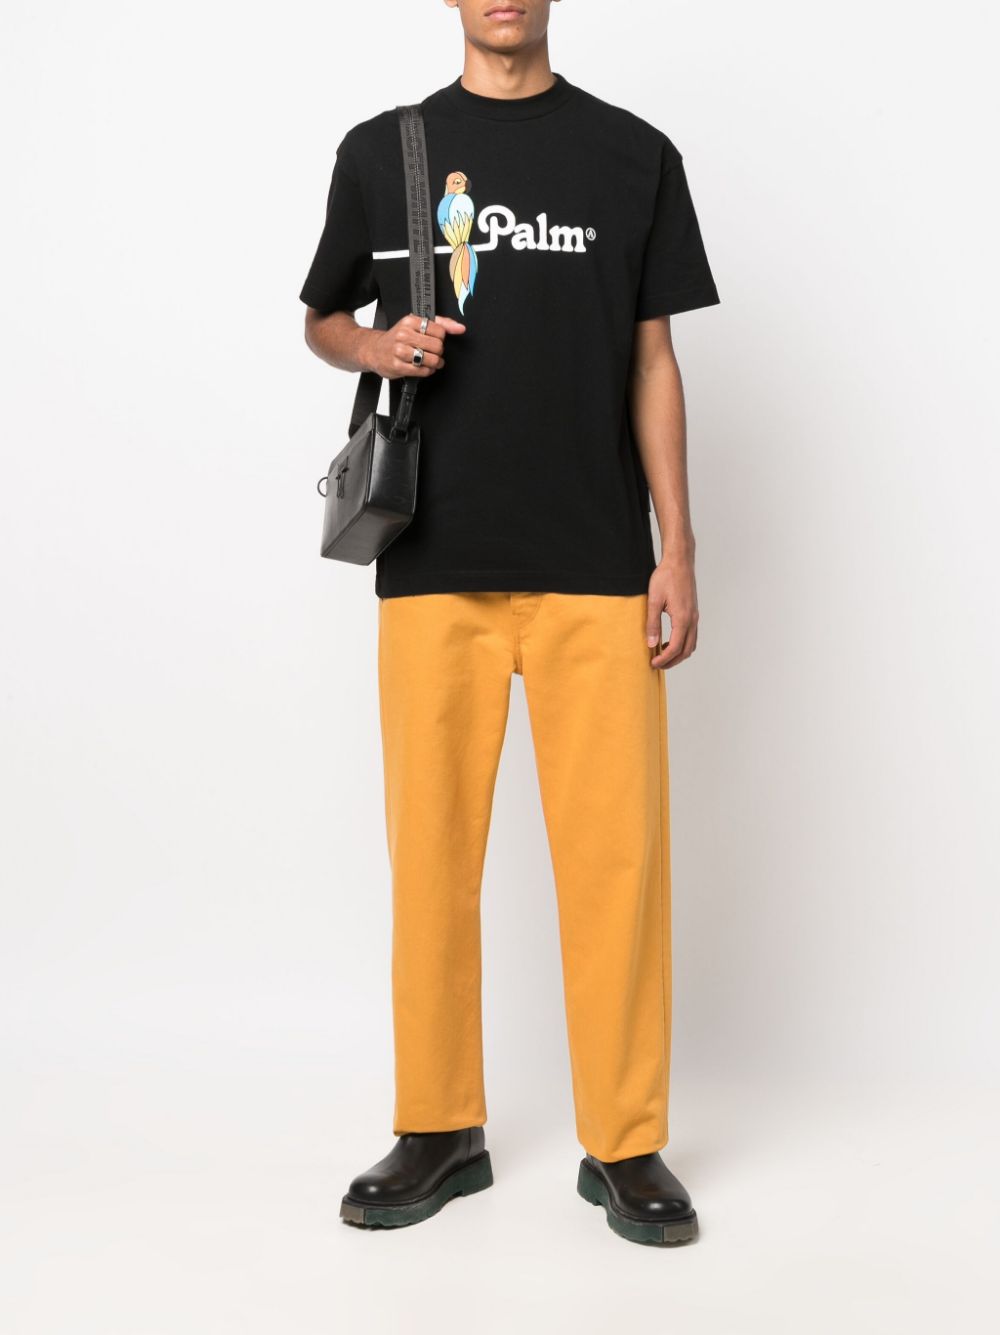 PALM ANGELS Parrot Classic T-Shirt Black - MAISONDEFASHION.COM